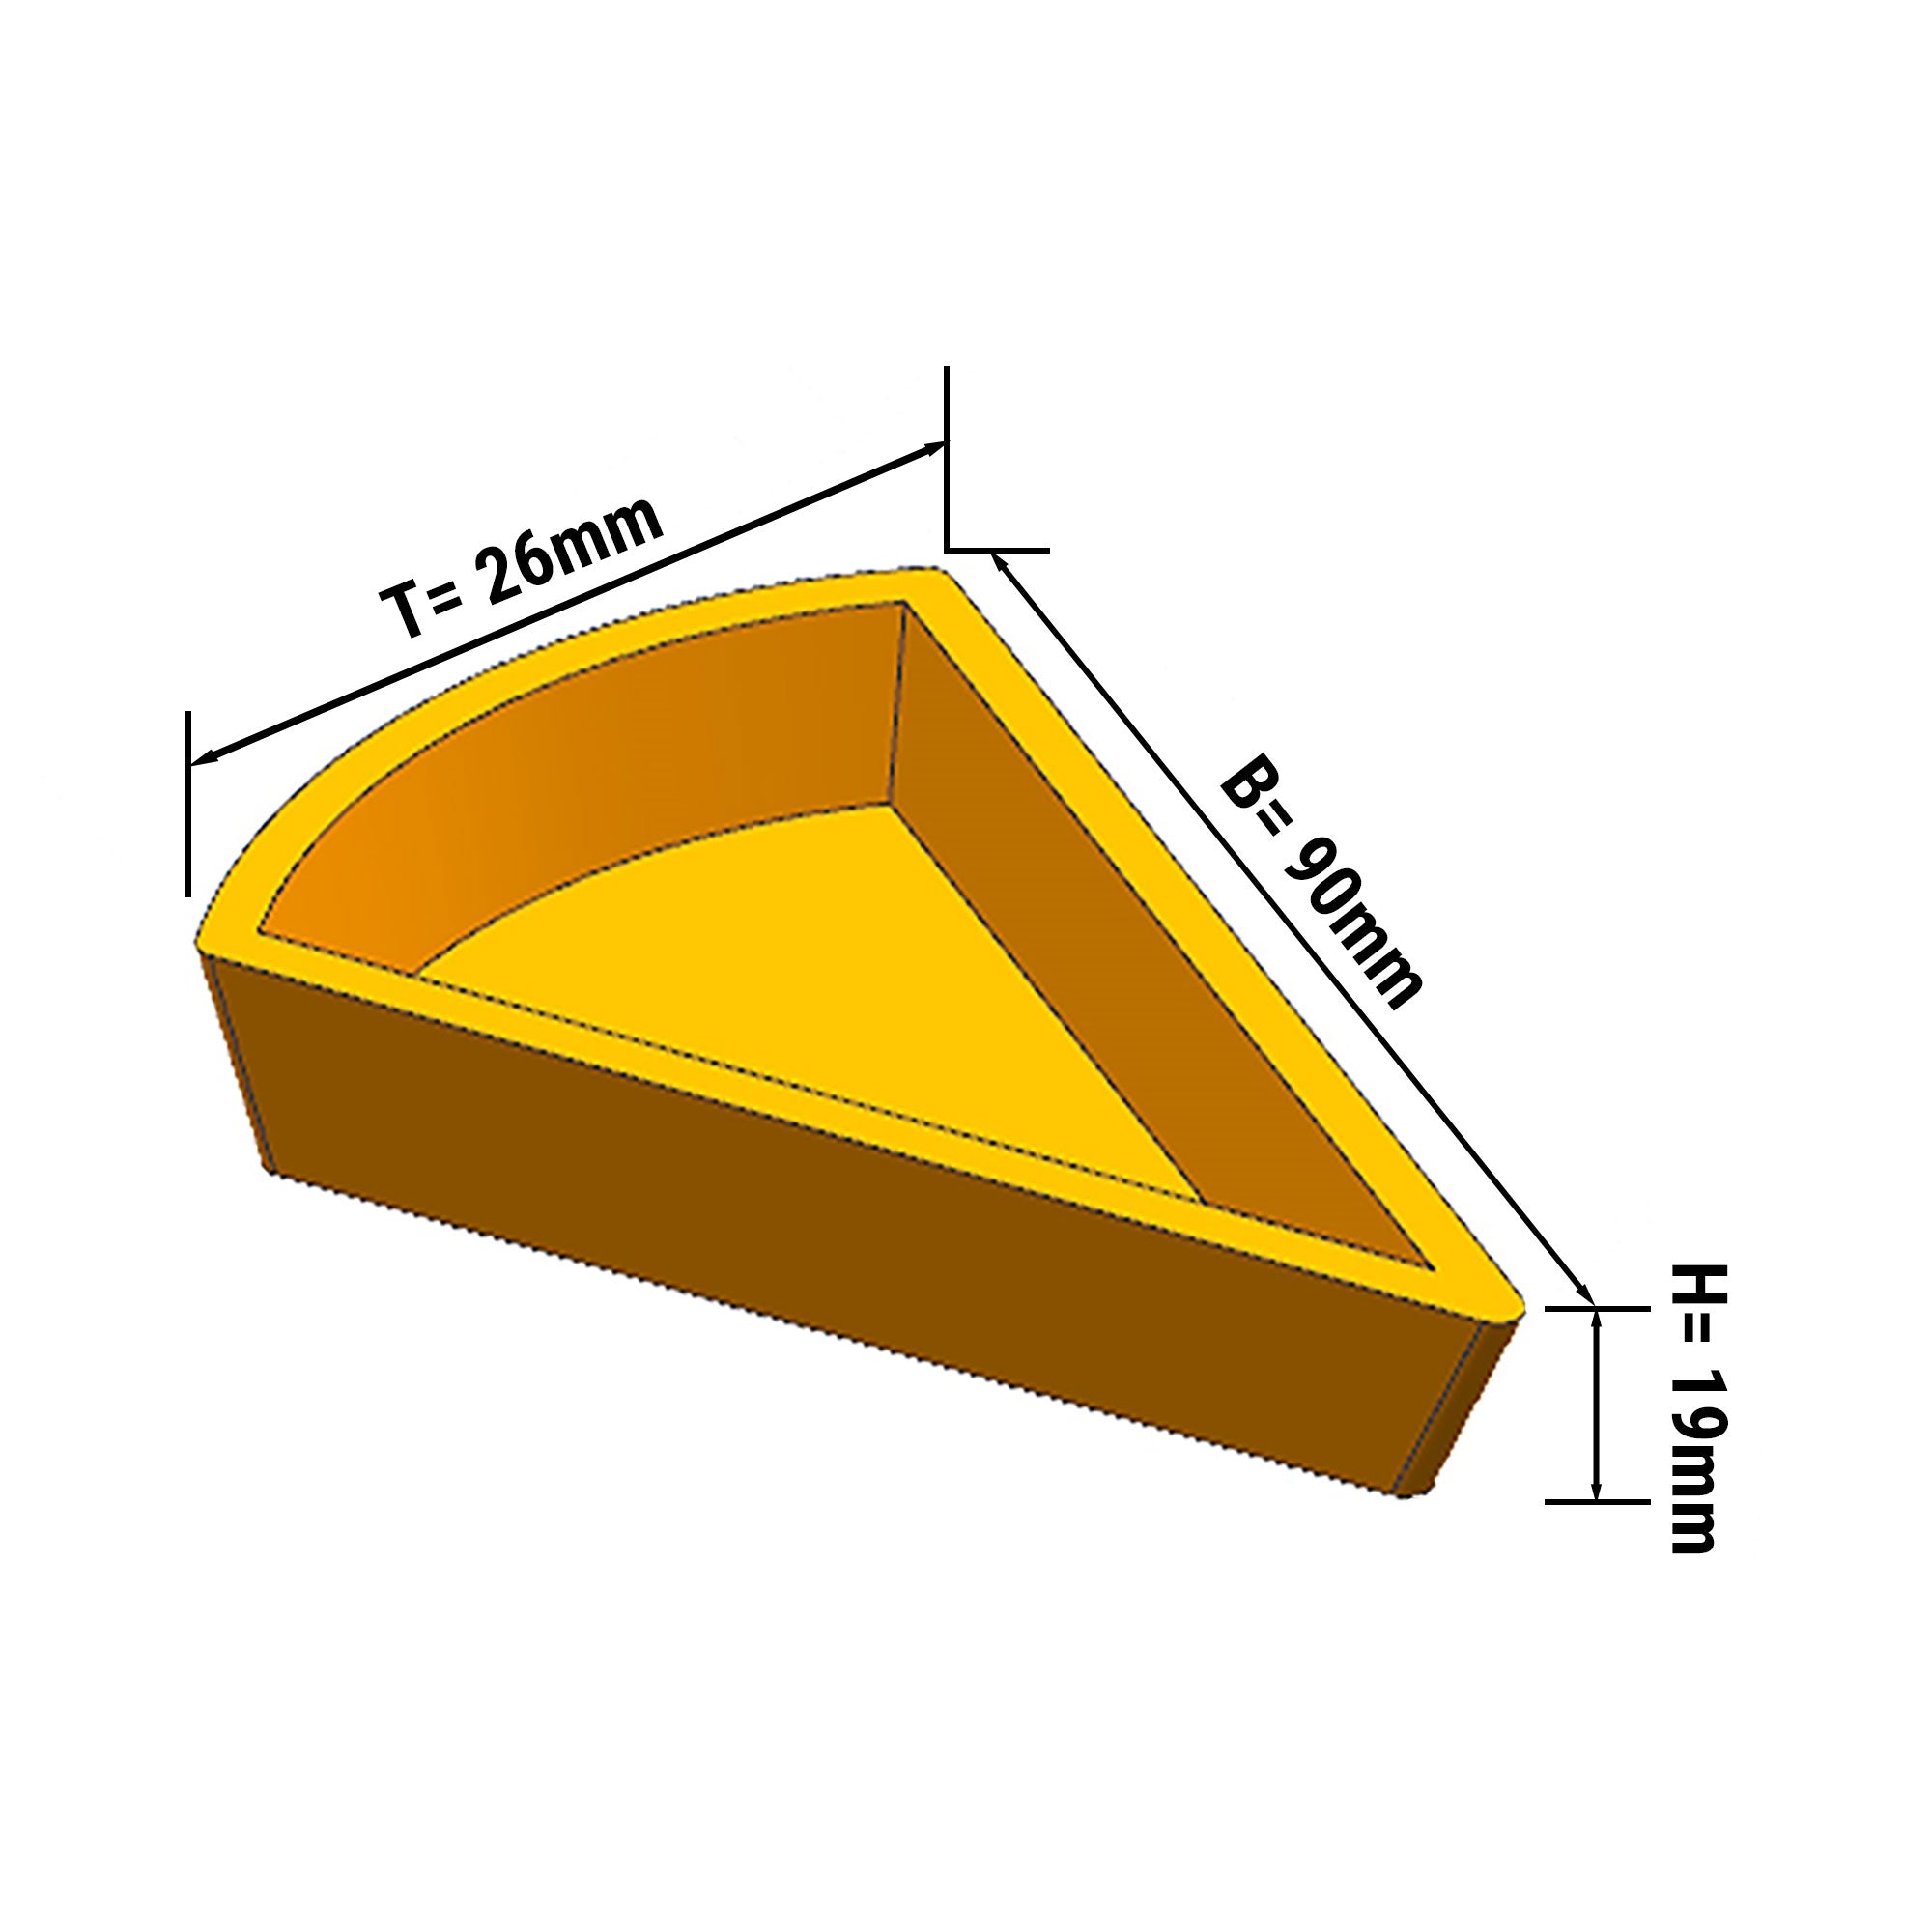 Plade til Tarteletmaskine - Form: Kagestykke - top: 110 x 60 mm, Bund: 100 x 48 mm / Højde: 20 mm